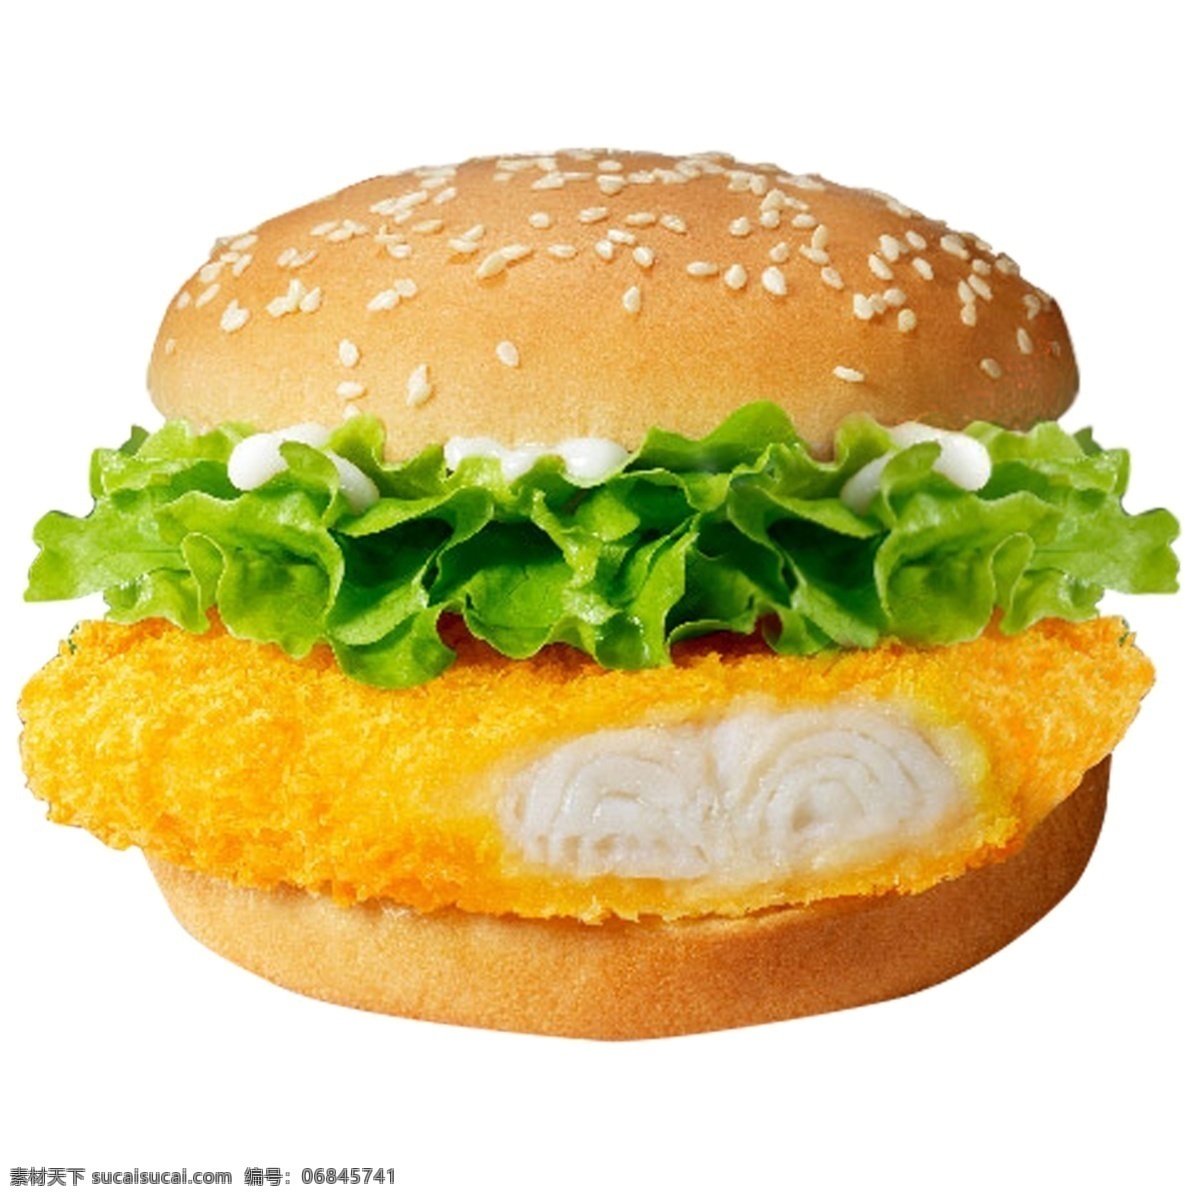 鳕鱼堡 鳕鱼排 鱼堡 汉堡 鳕鱼 青菜 沙拉 酱 鳕鱼汉堡 汉堡堡 小吃 西式快餐 快餐 分层